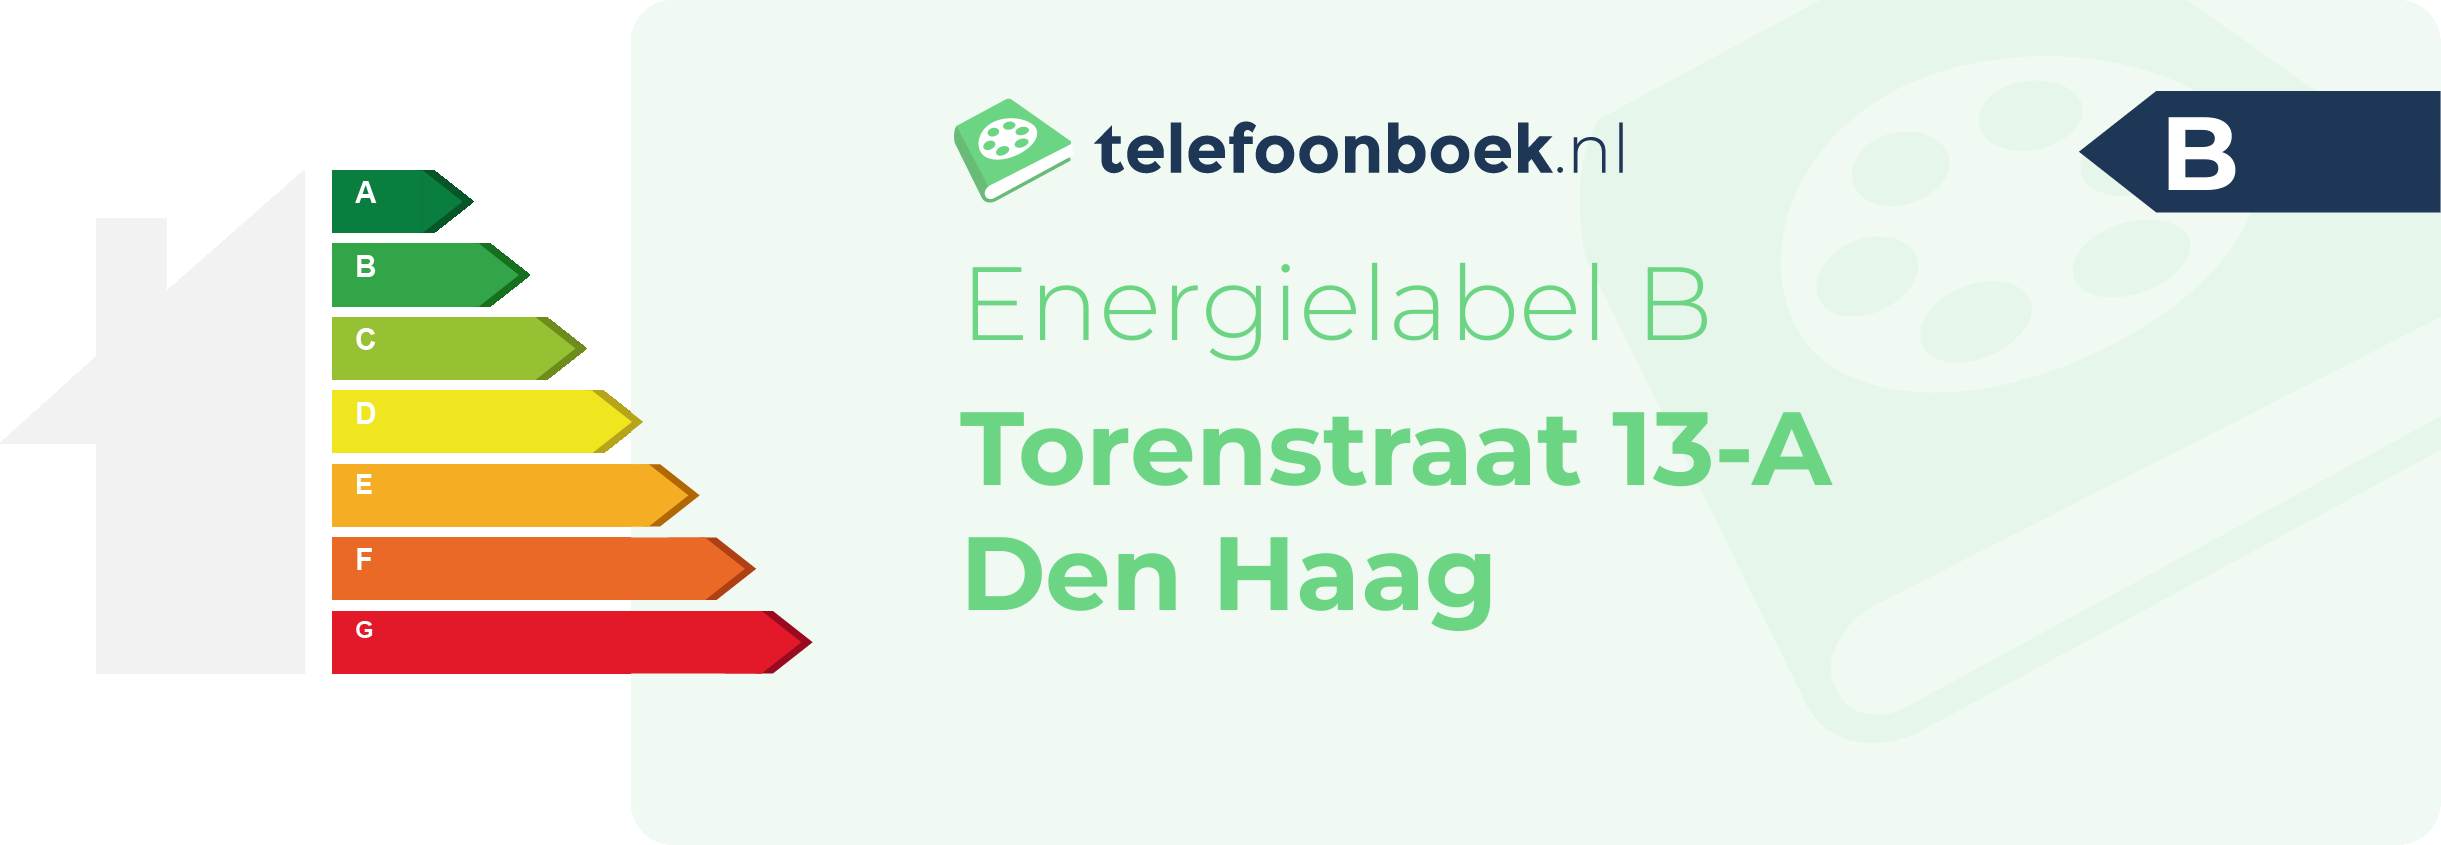 Energielabel Torenstraat 13-A Den Haag